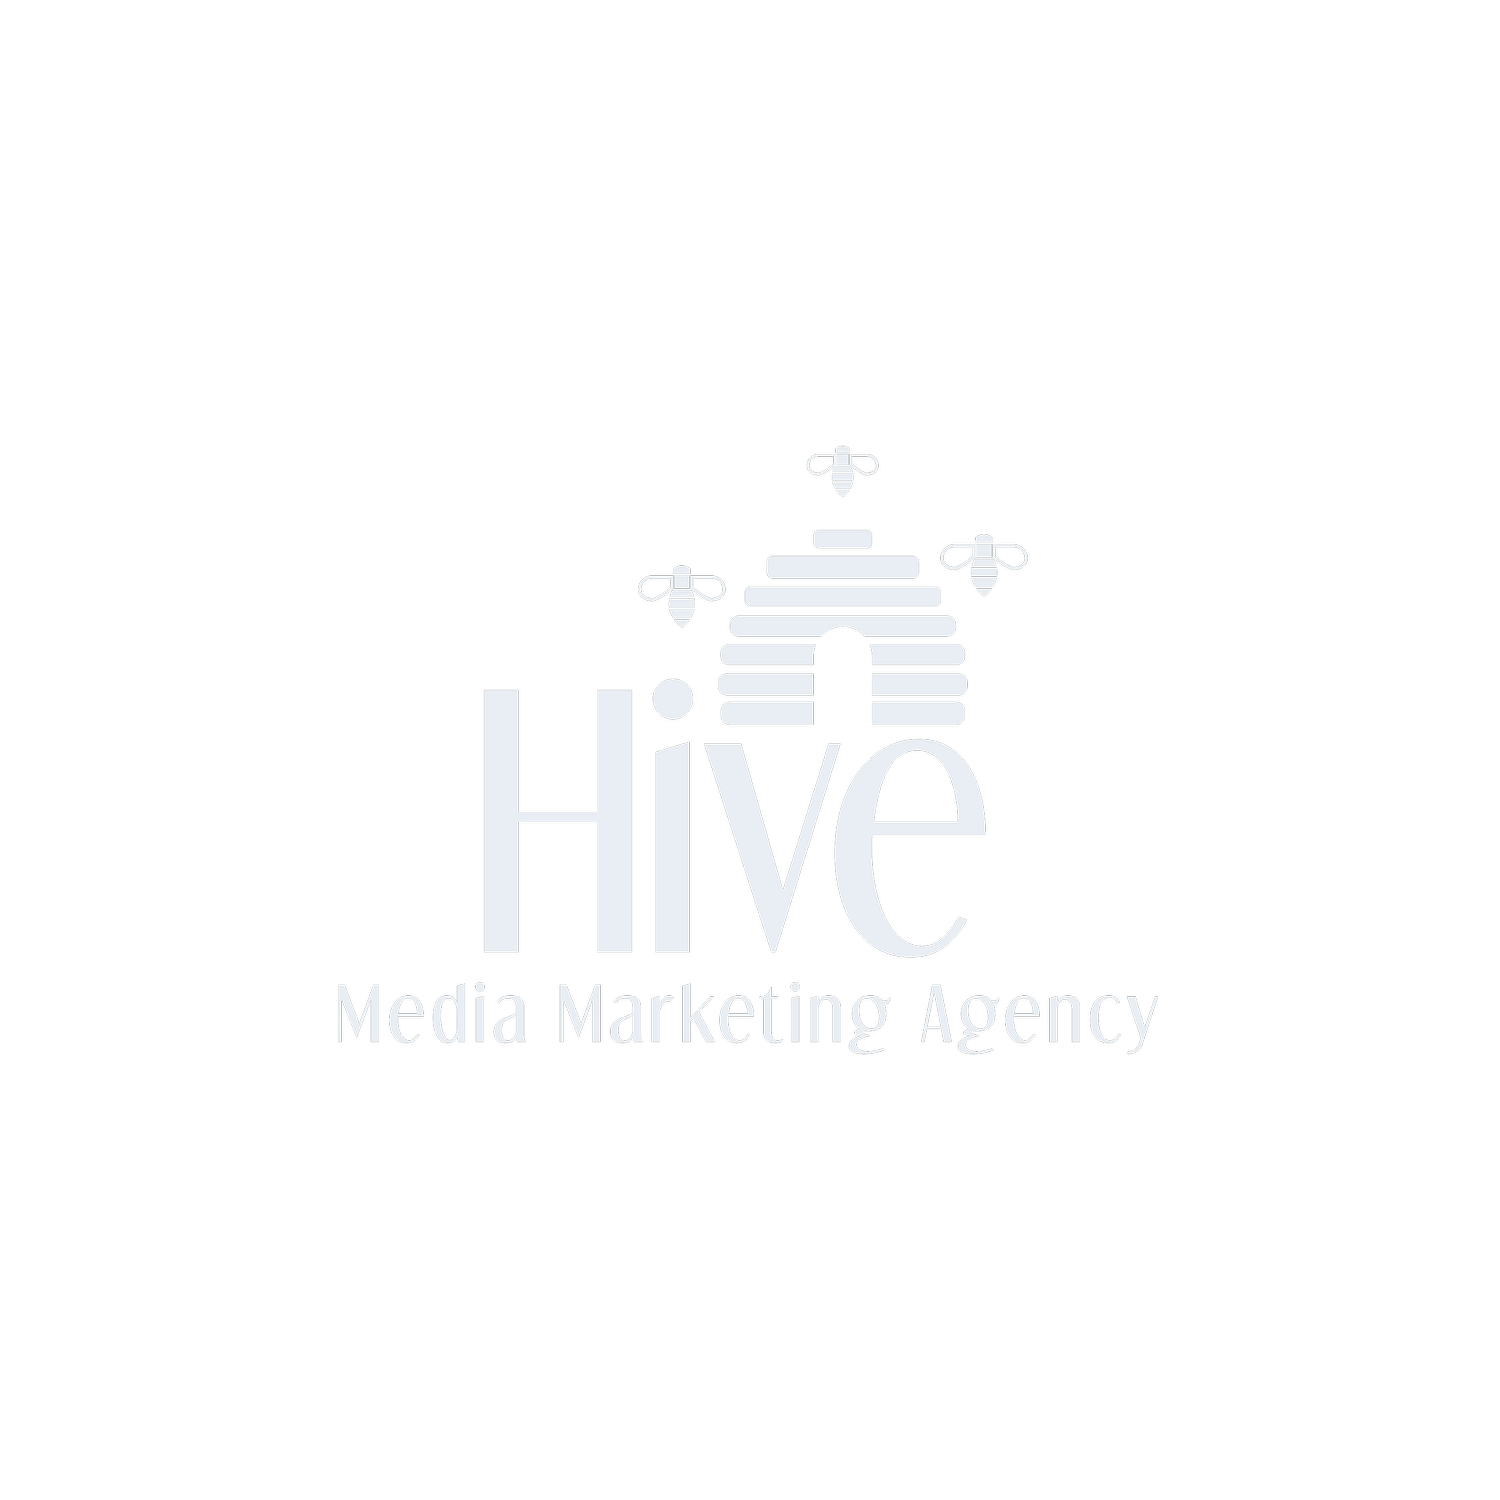 Hive Media Marketing Agency